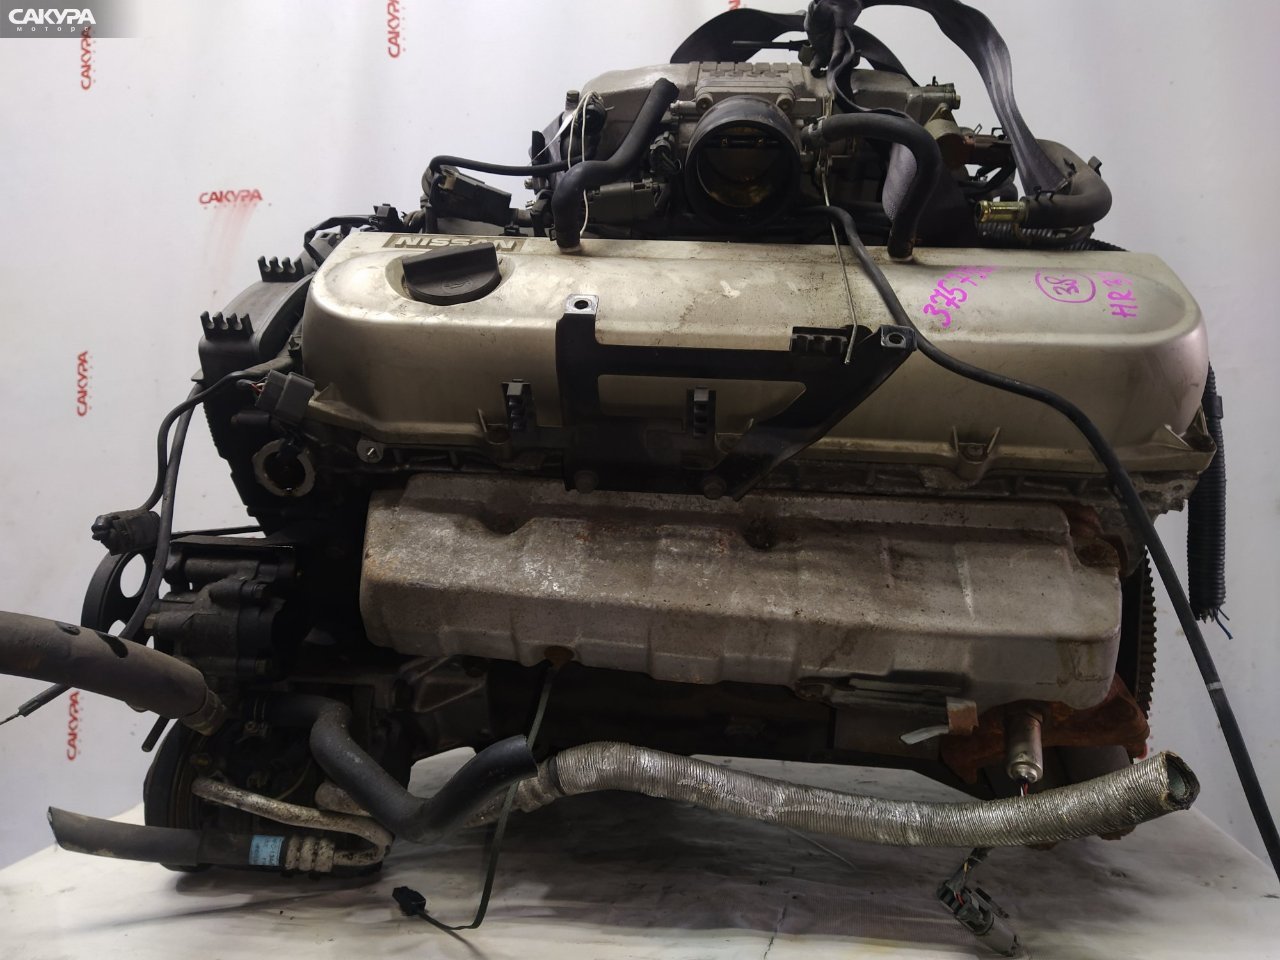 Двигатель Nissan Skyline HR33 RB20E: купить в Сакура Красноярск.